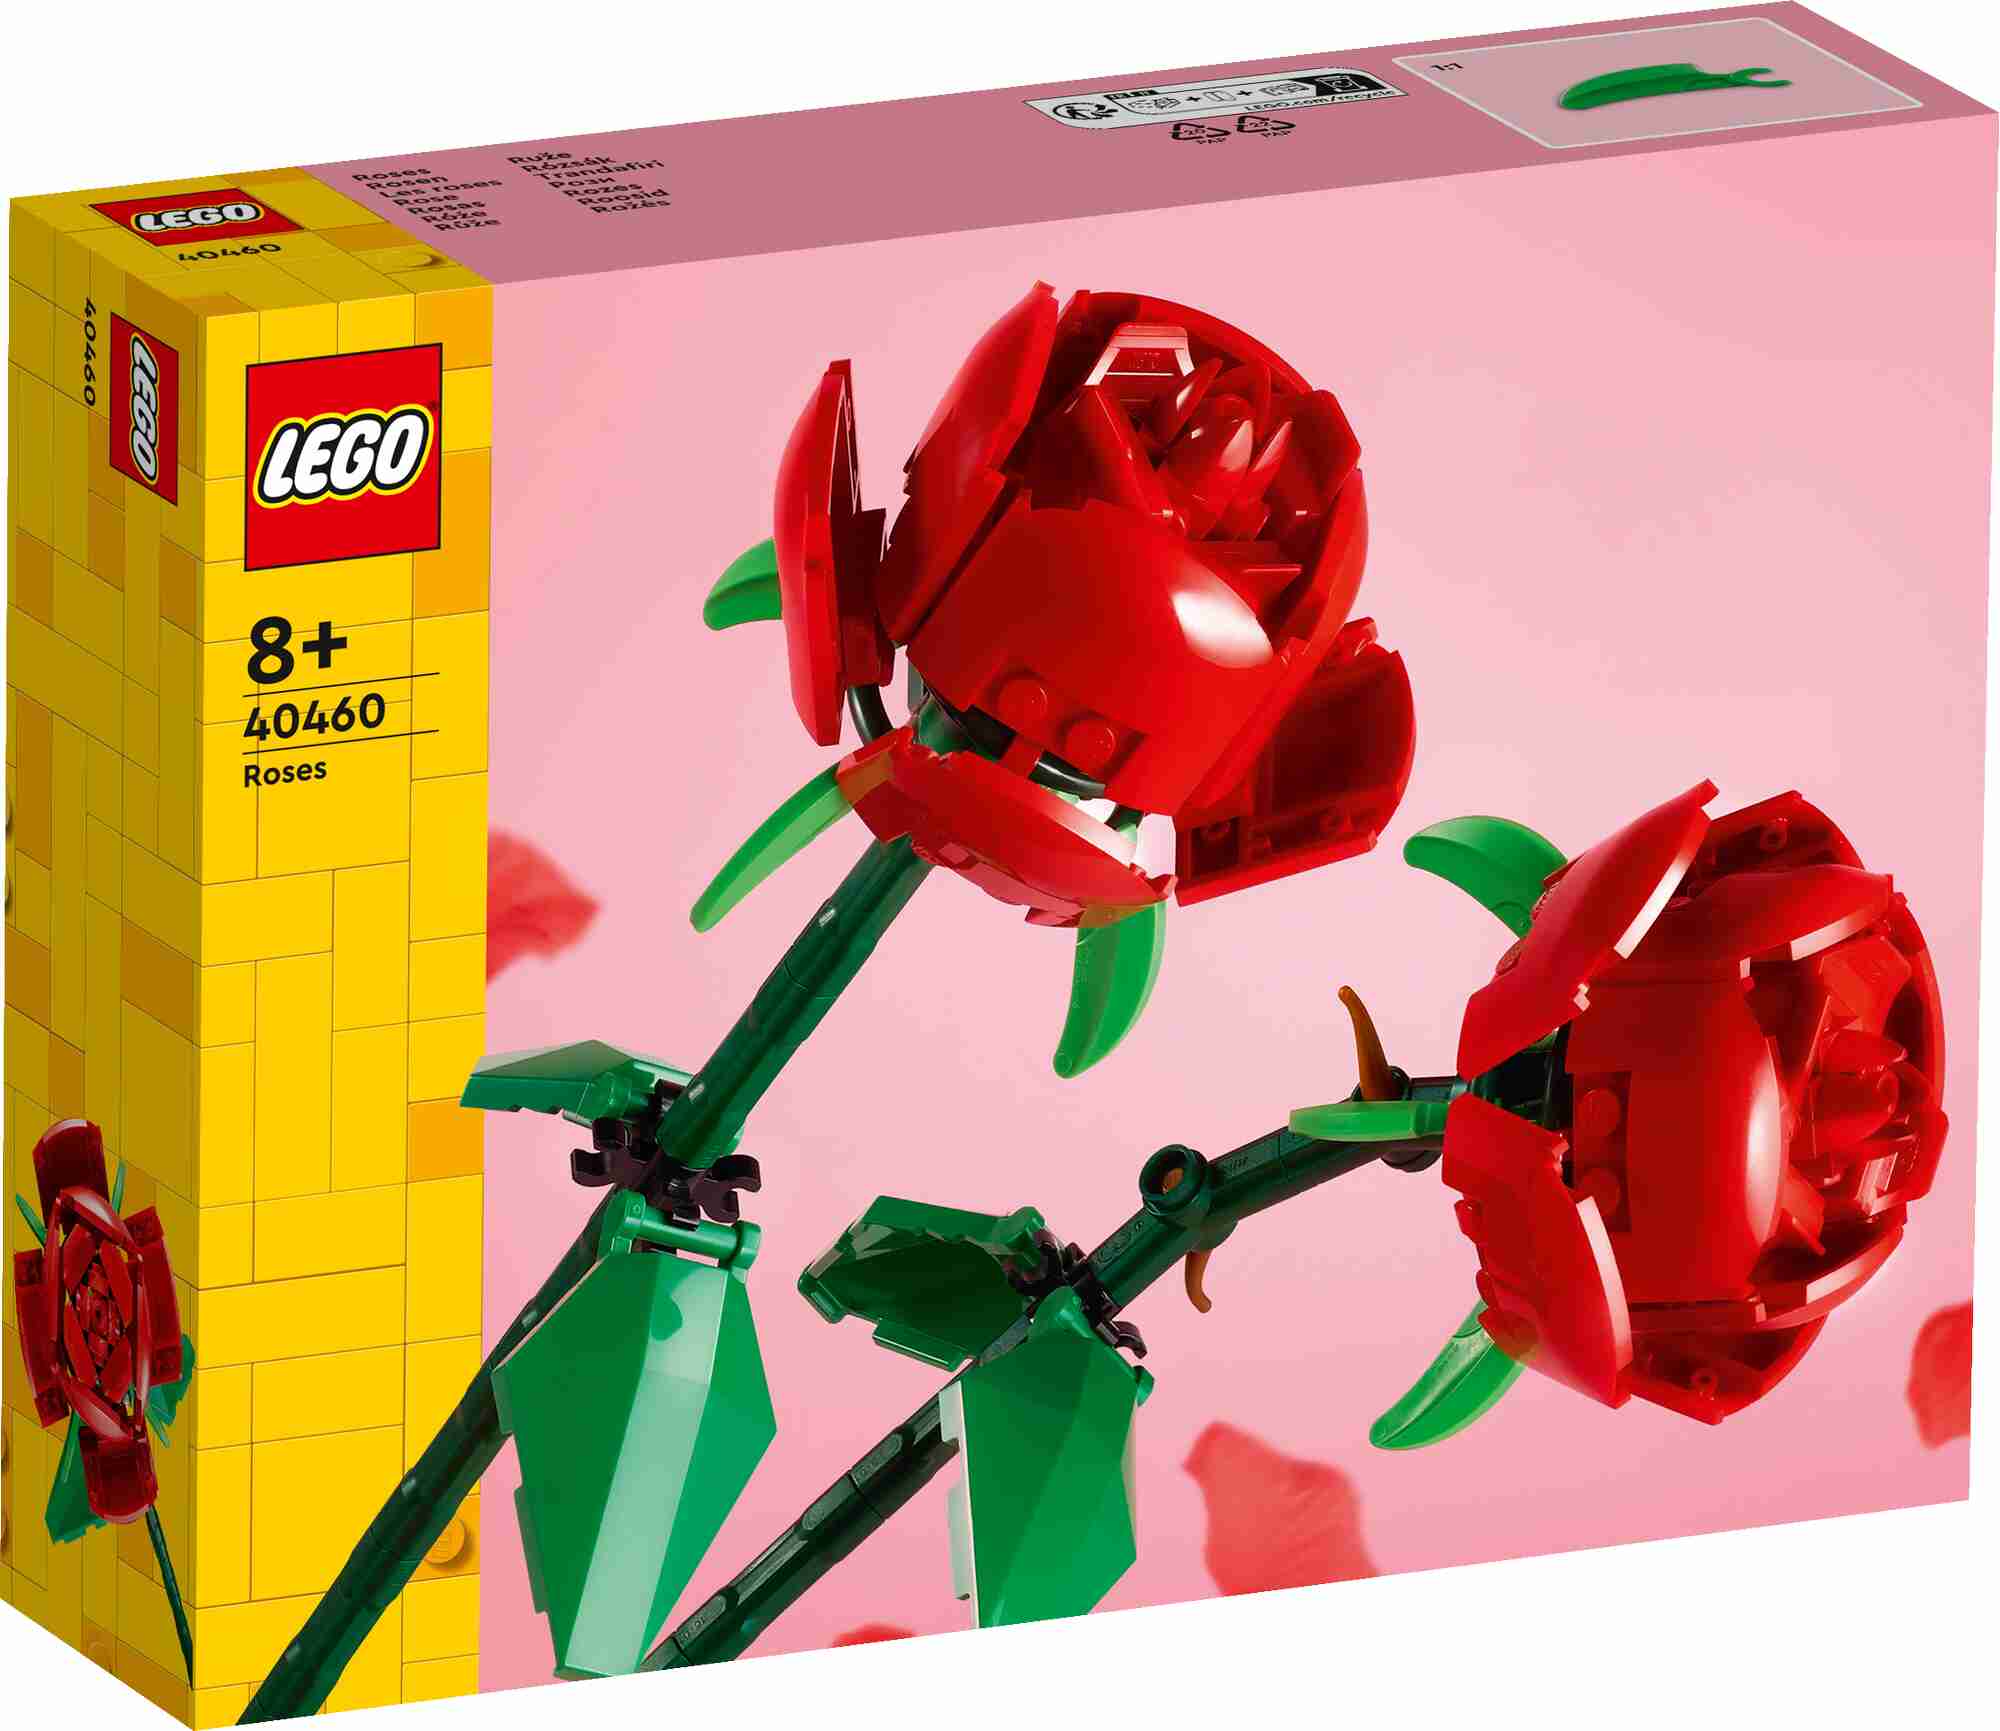 LEGO 40460 Iconic Rosen, 2 rote Blüten, grüne Blätter und Stängel